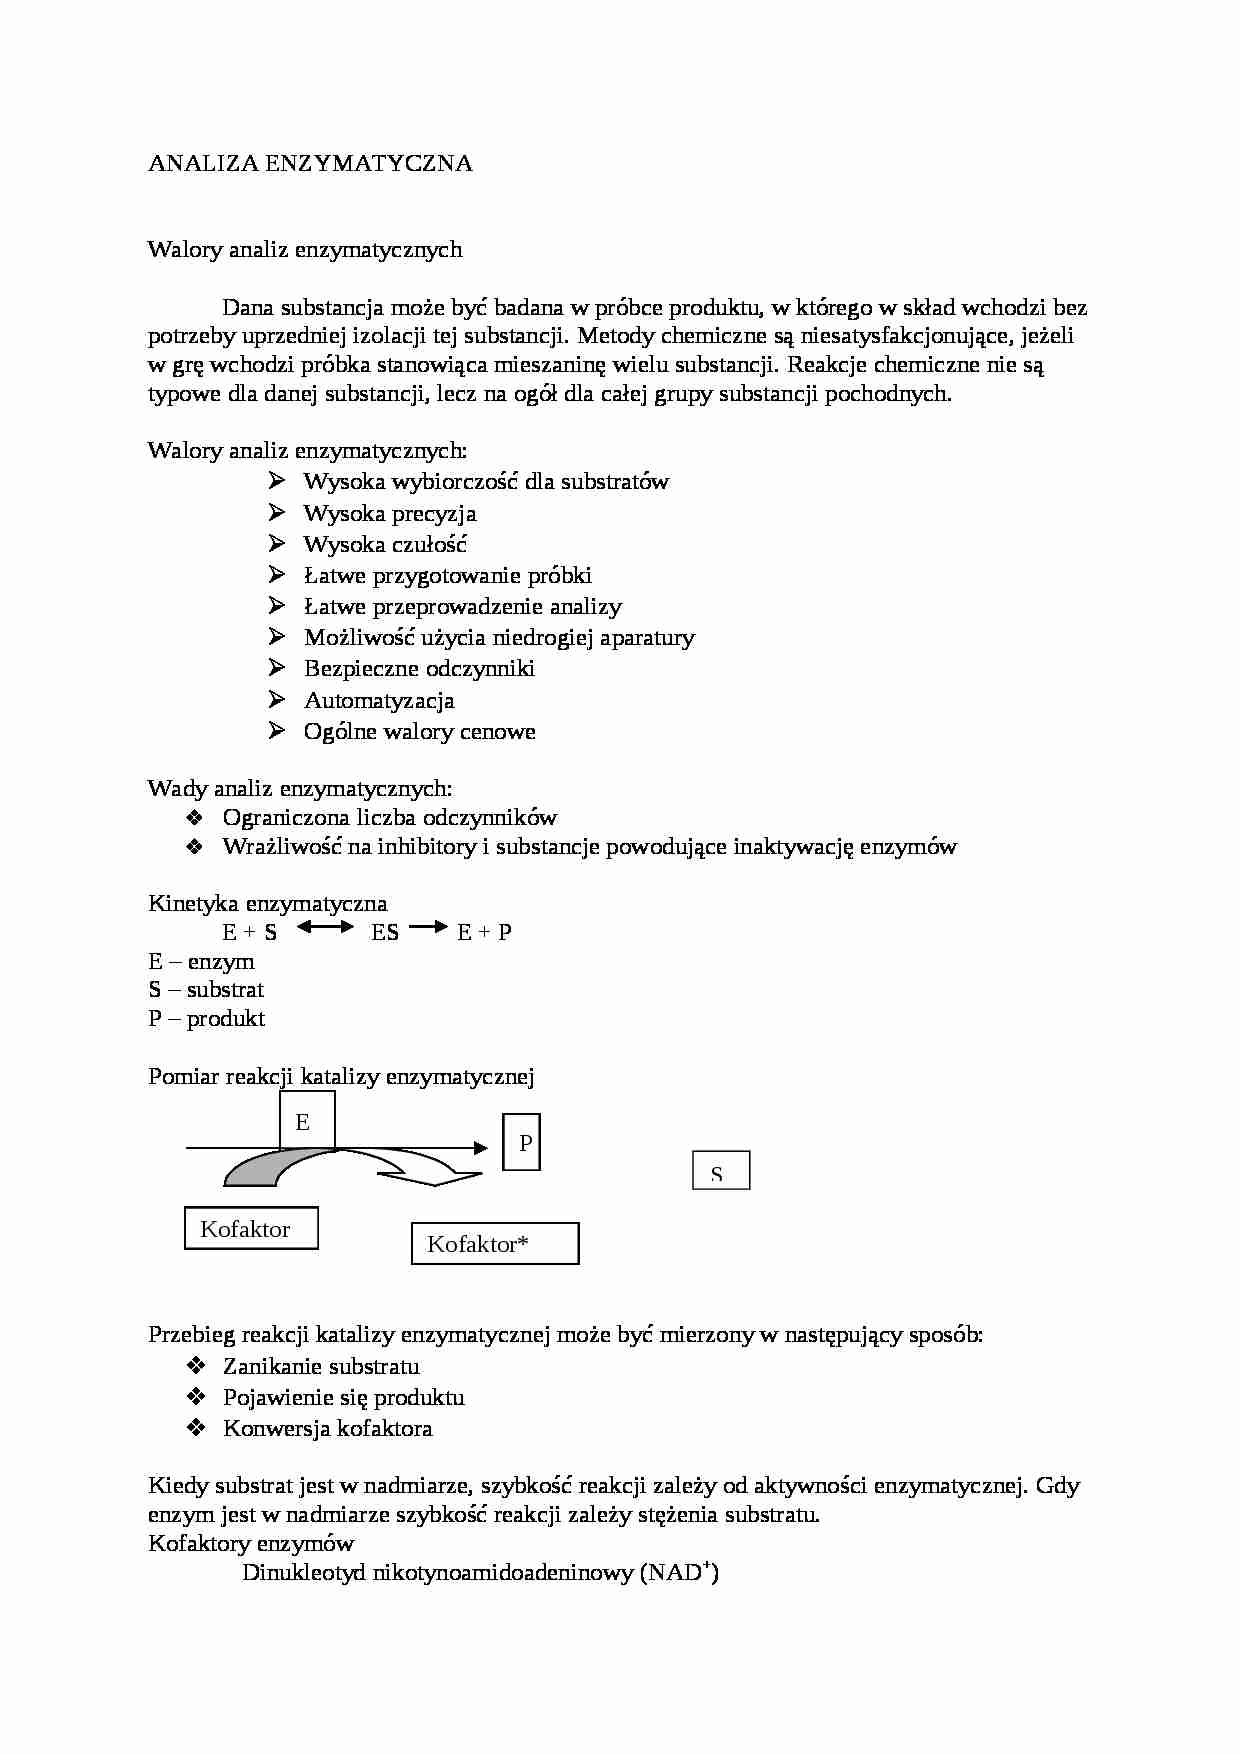 Analiza enzymatyczna, sem VI - strona 1